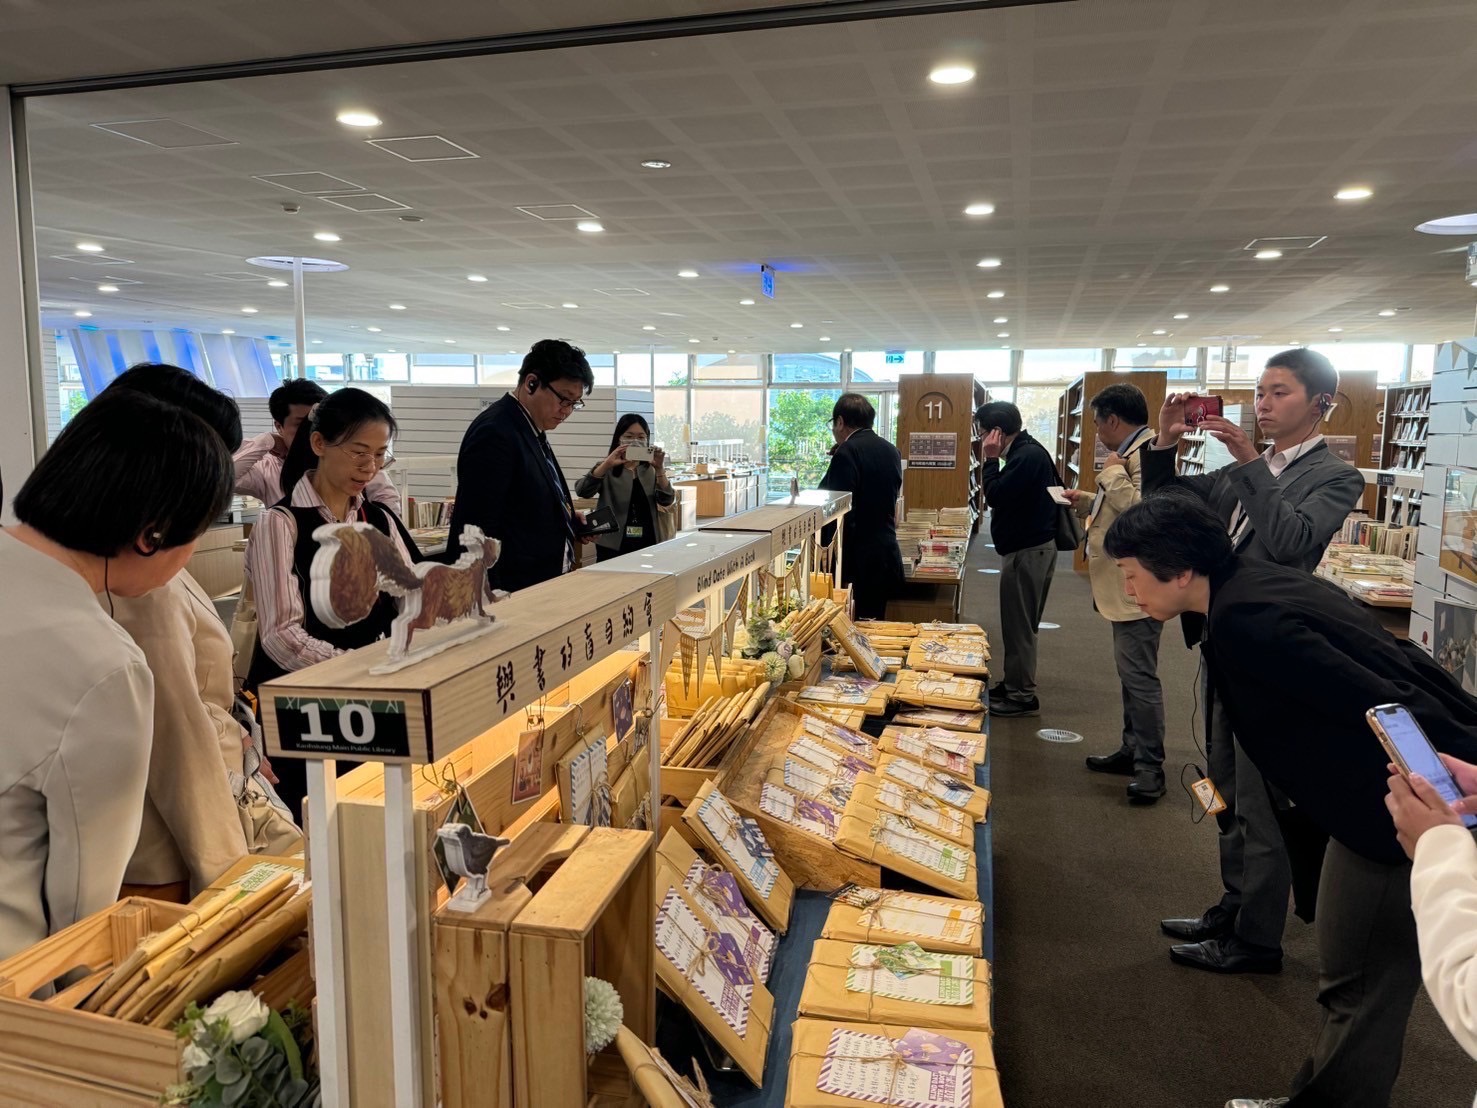 圖說5：日本東京都荒川區議會訪團參訪高雄市立圖書總館，盛讚館內藏書豐富多元。